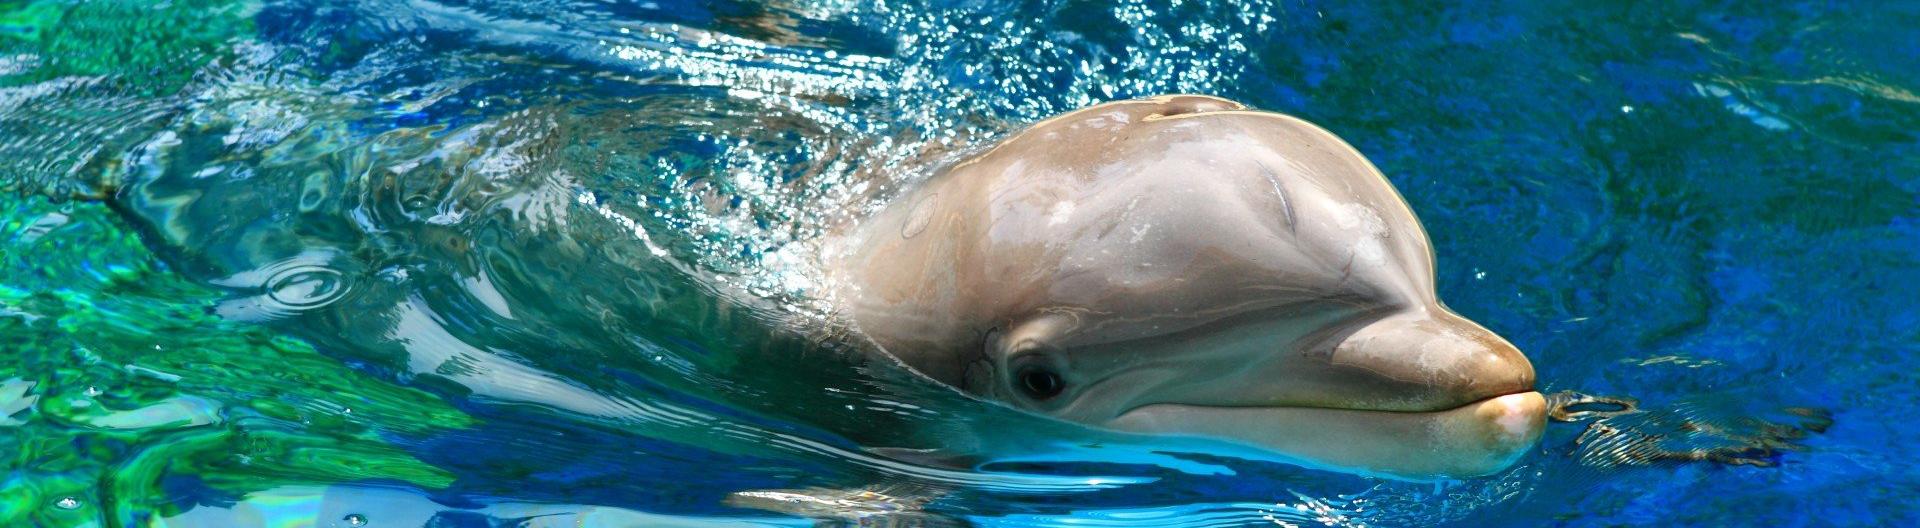 Реанимобиль для спасения дельфинов появился на Кубани 